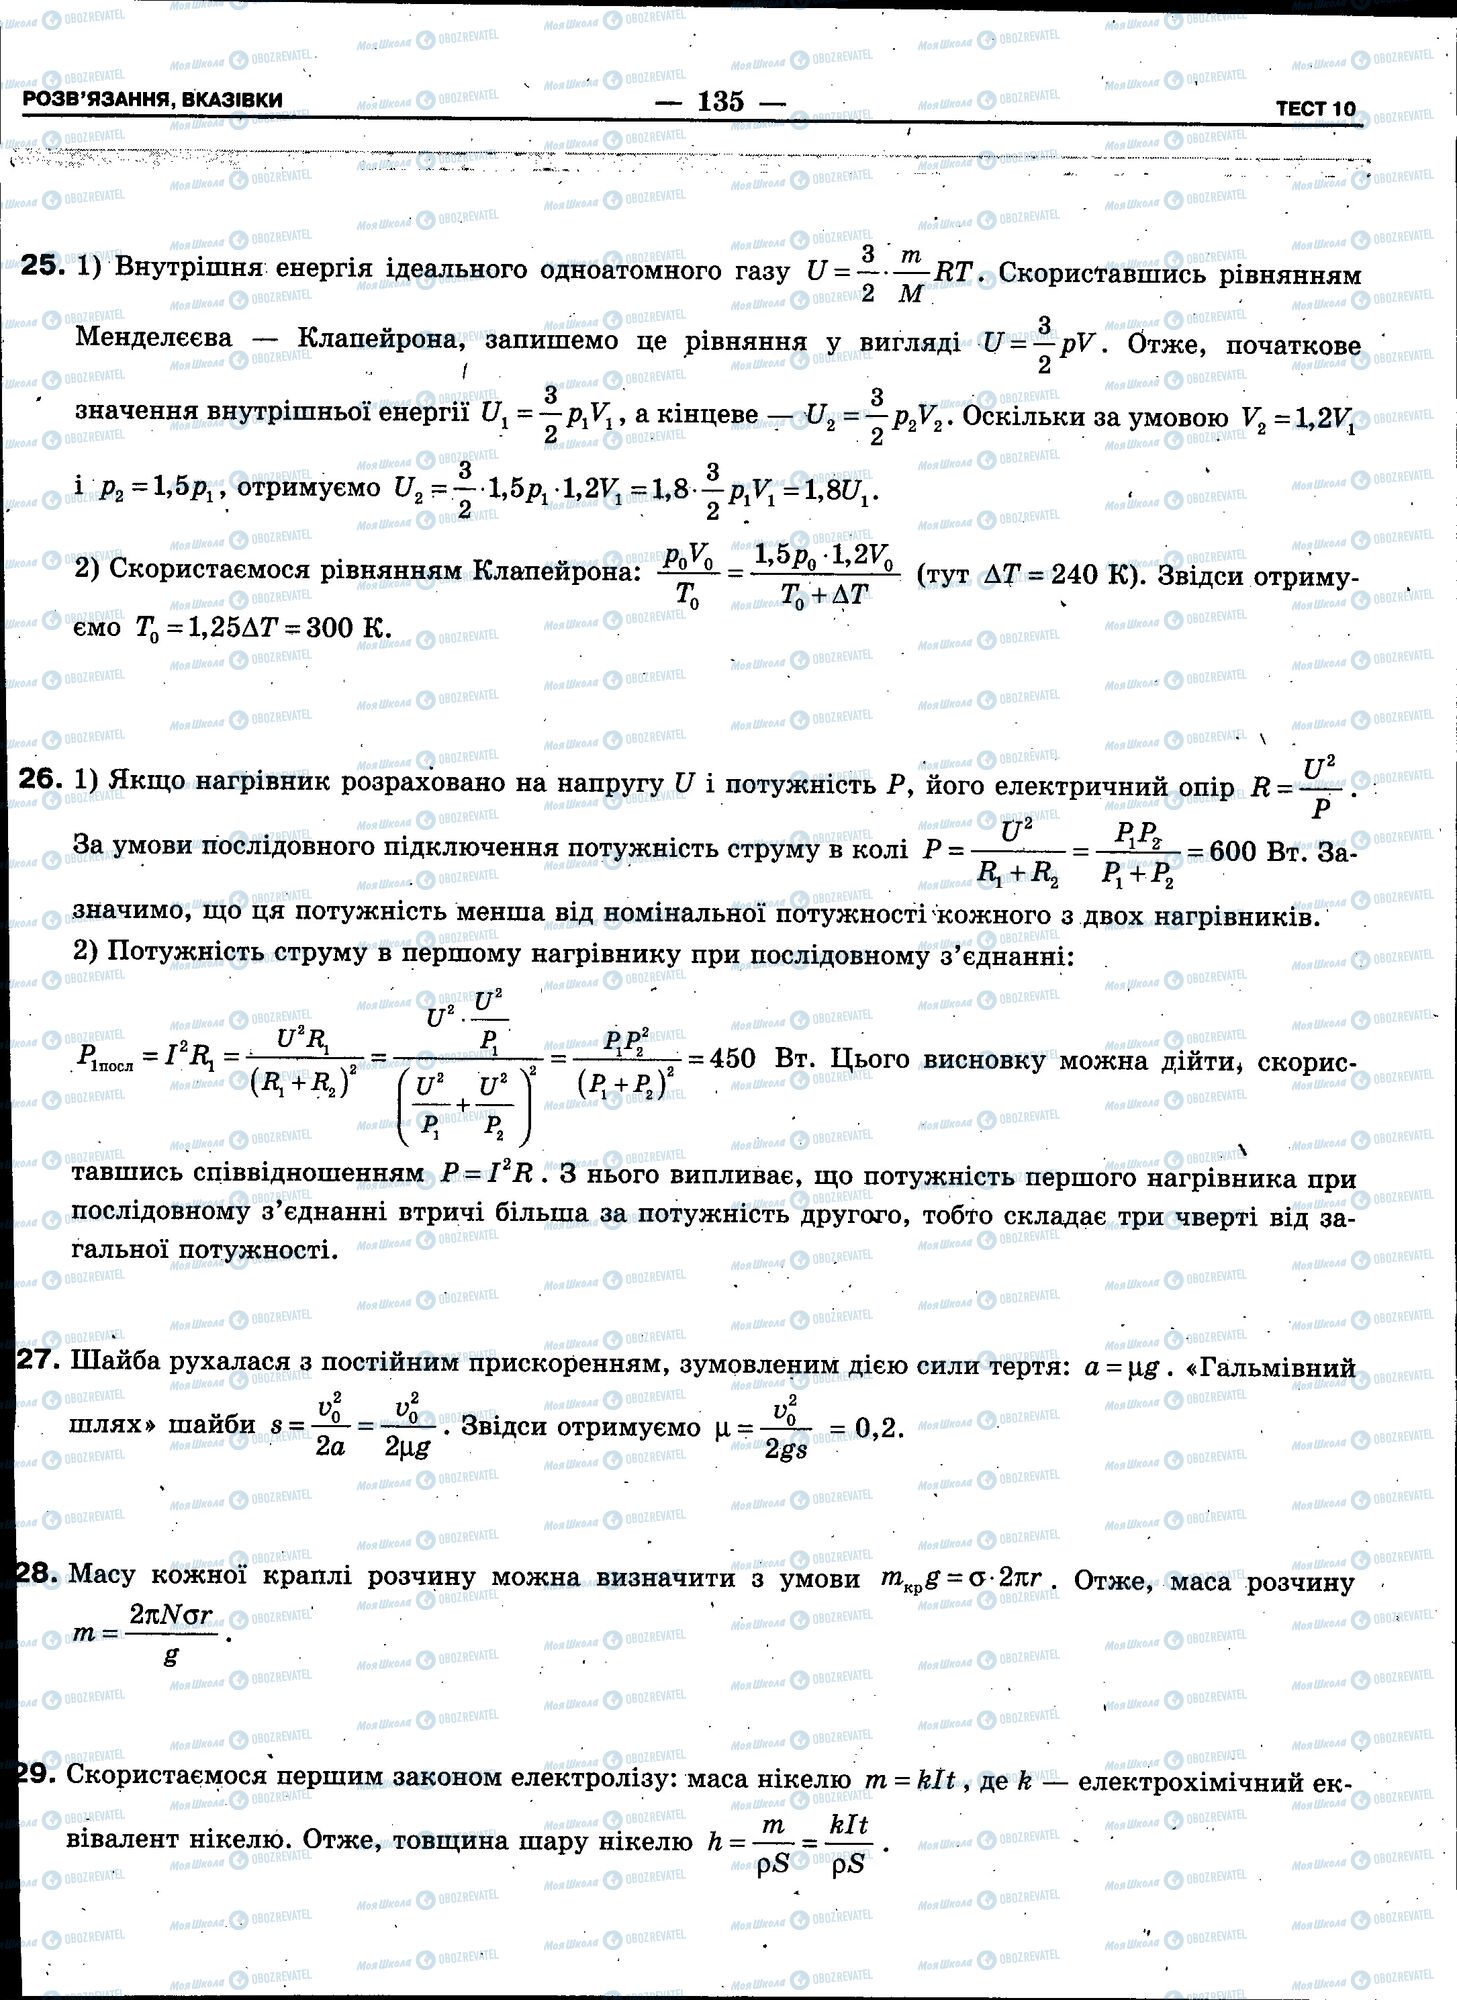 ЗНО Физика 11 класс страница 135